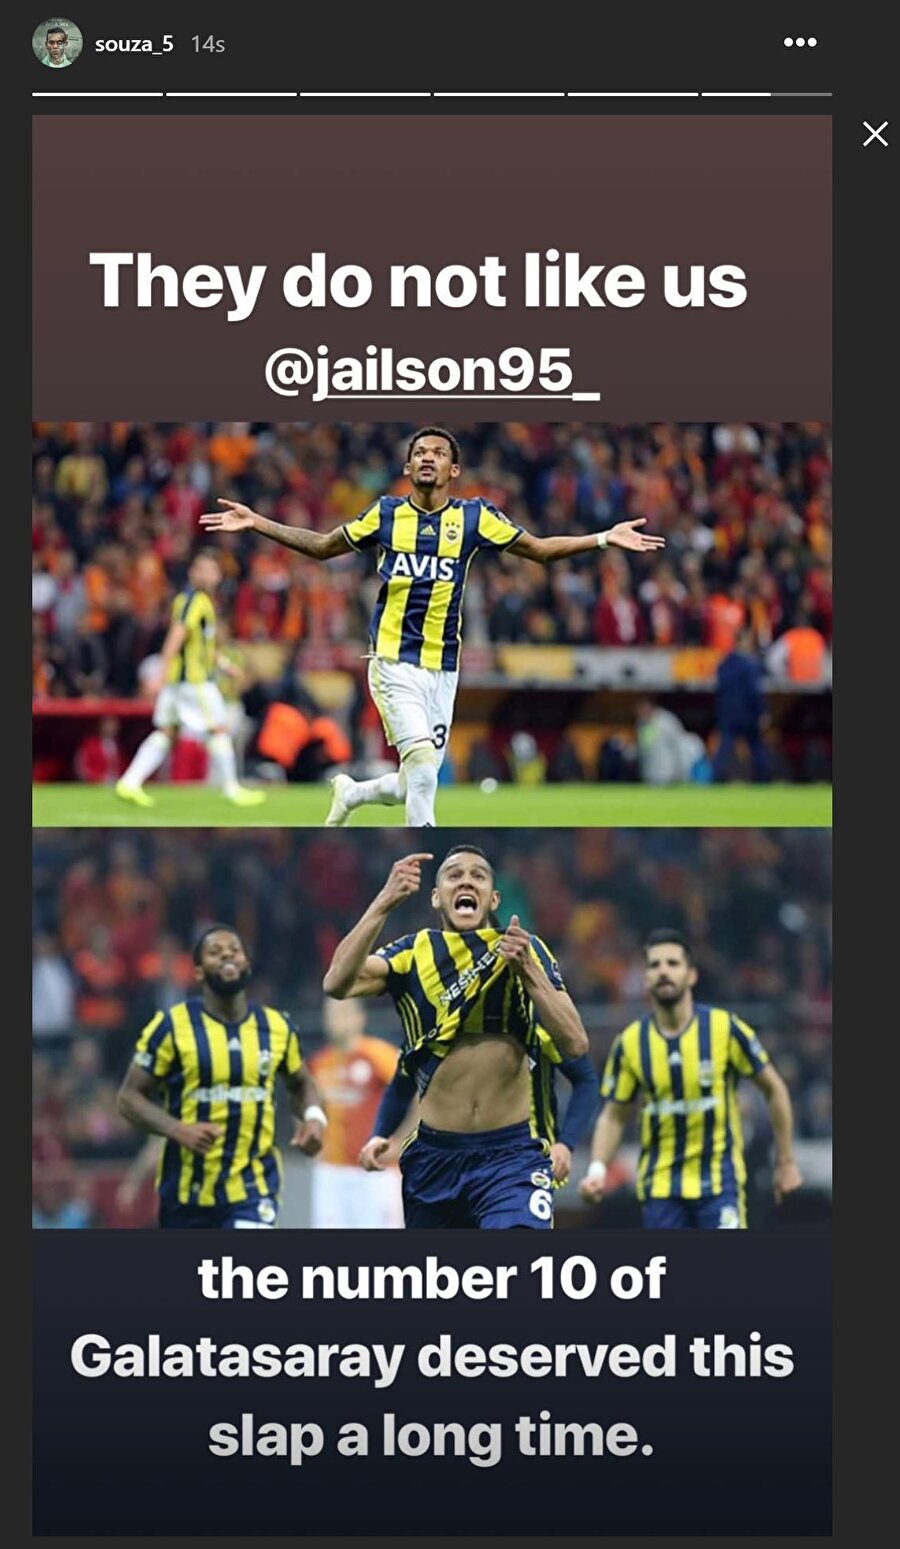 Souza, Jailson ve kendisinin Galatasaray'a attığı gollerin sevinçlerini paylaşarak, "Bizi sevmiyorlar Jailson. Galatasaray'ın 10 numarası bu tokadı uzun süredir hak ediyordu" ifadeleriyle deyim yerindeyse varisi Jailson’un arkasında durdu.
